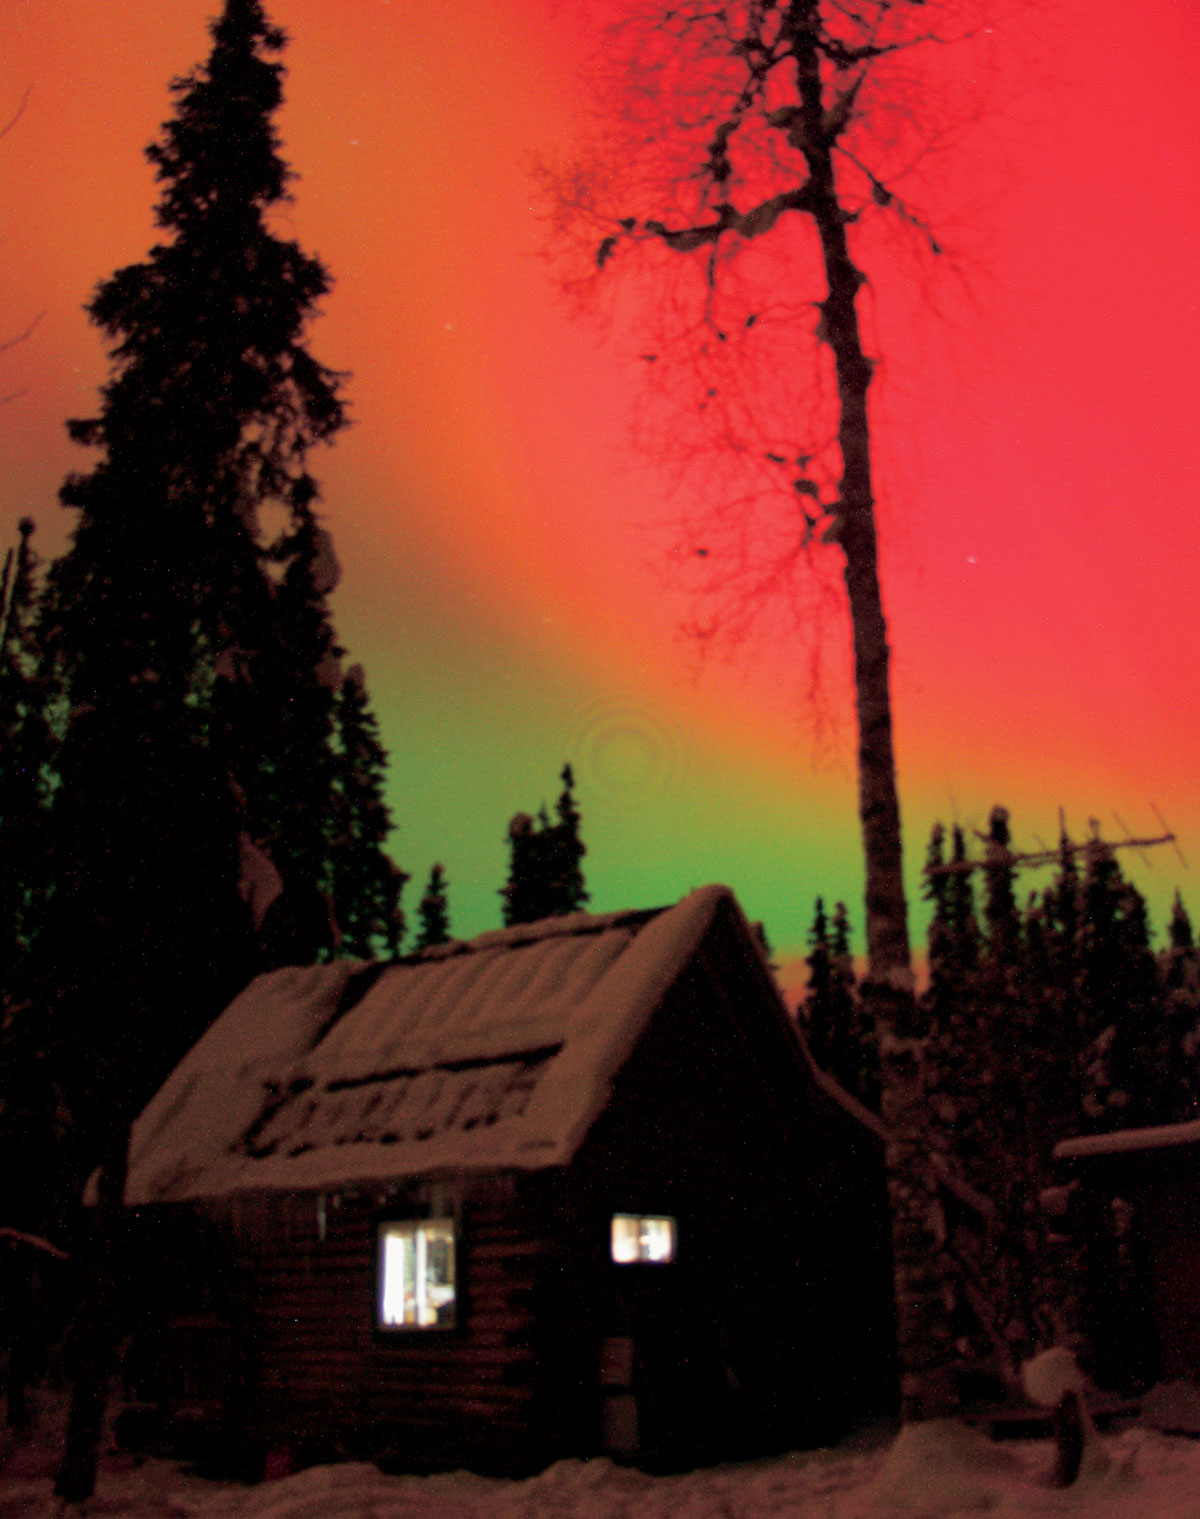 A photograph of aurora borealis.